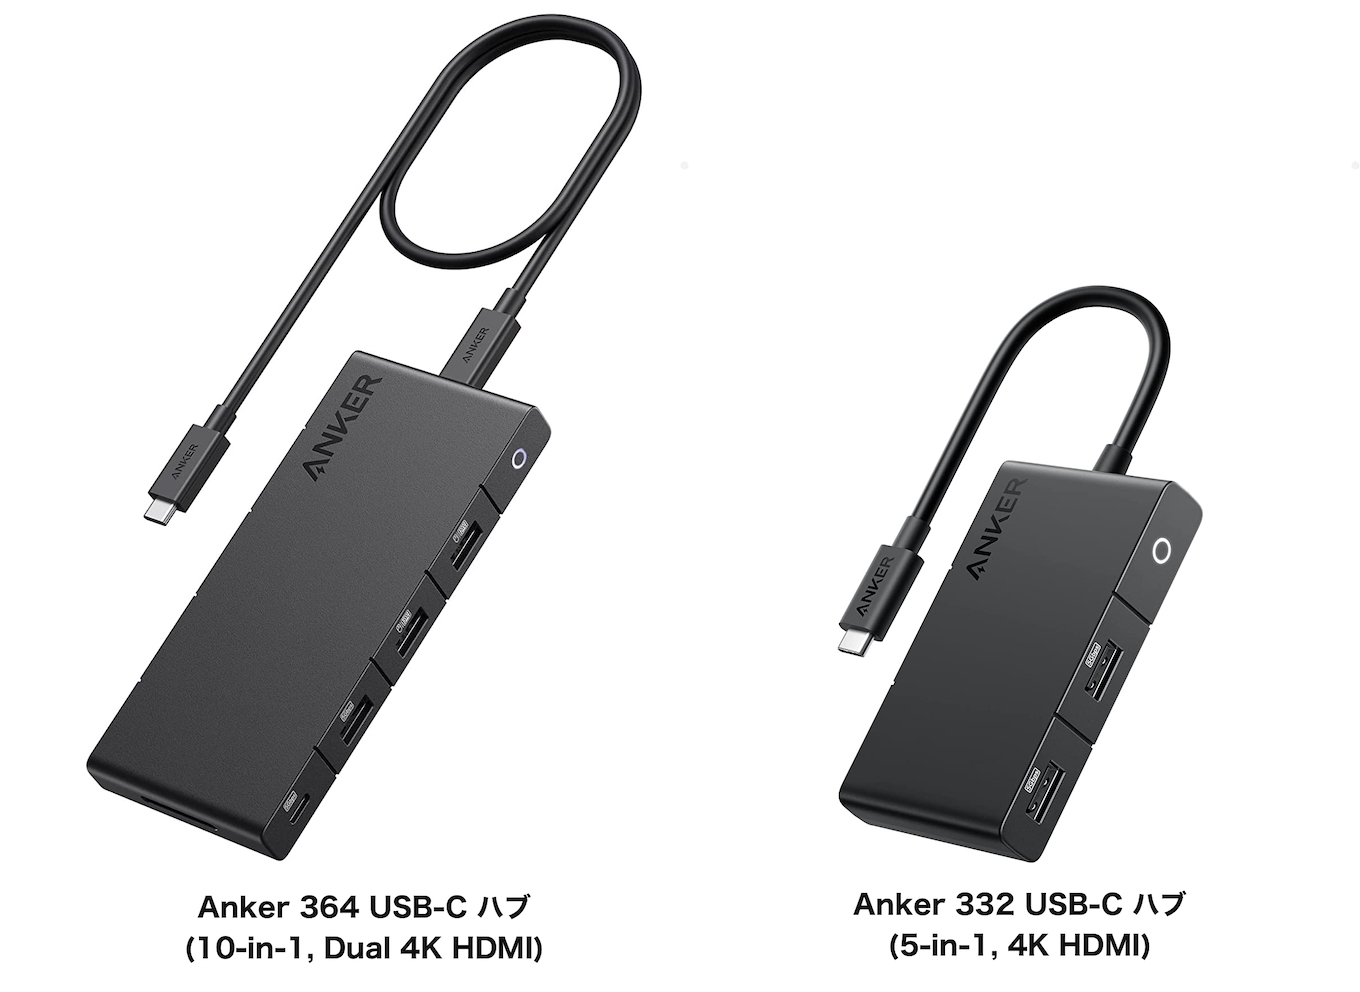 Anker 364 USB-C ハブ (10-in-1, Dual 4K HDMI)とAnker 332 USB-C ハブ (5-in-1, 4K HDMI)